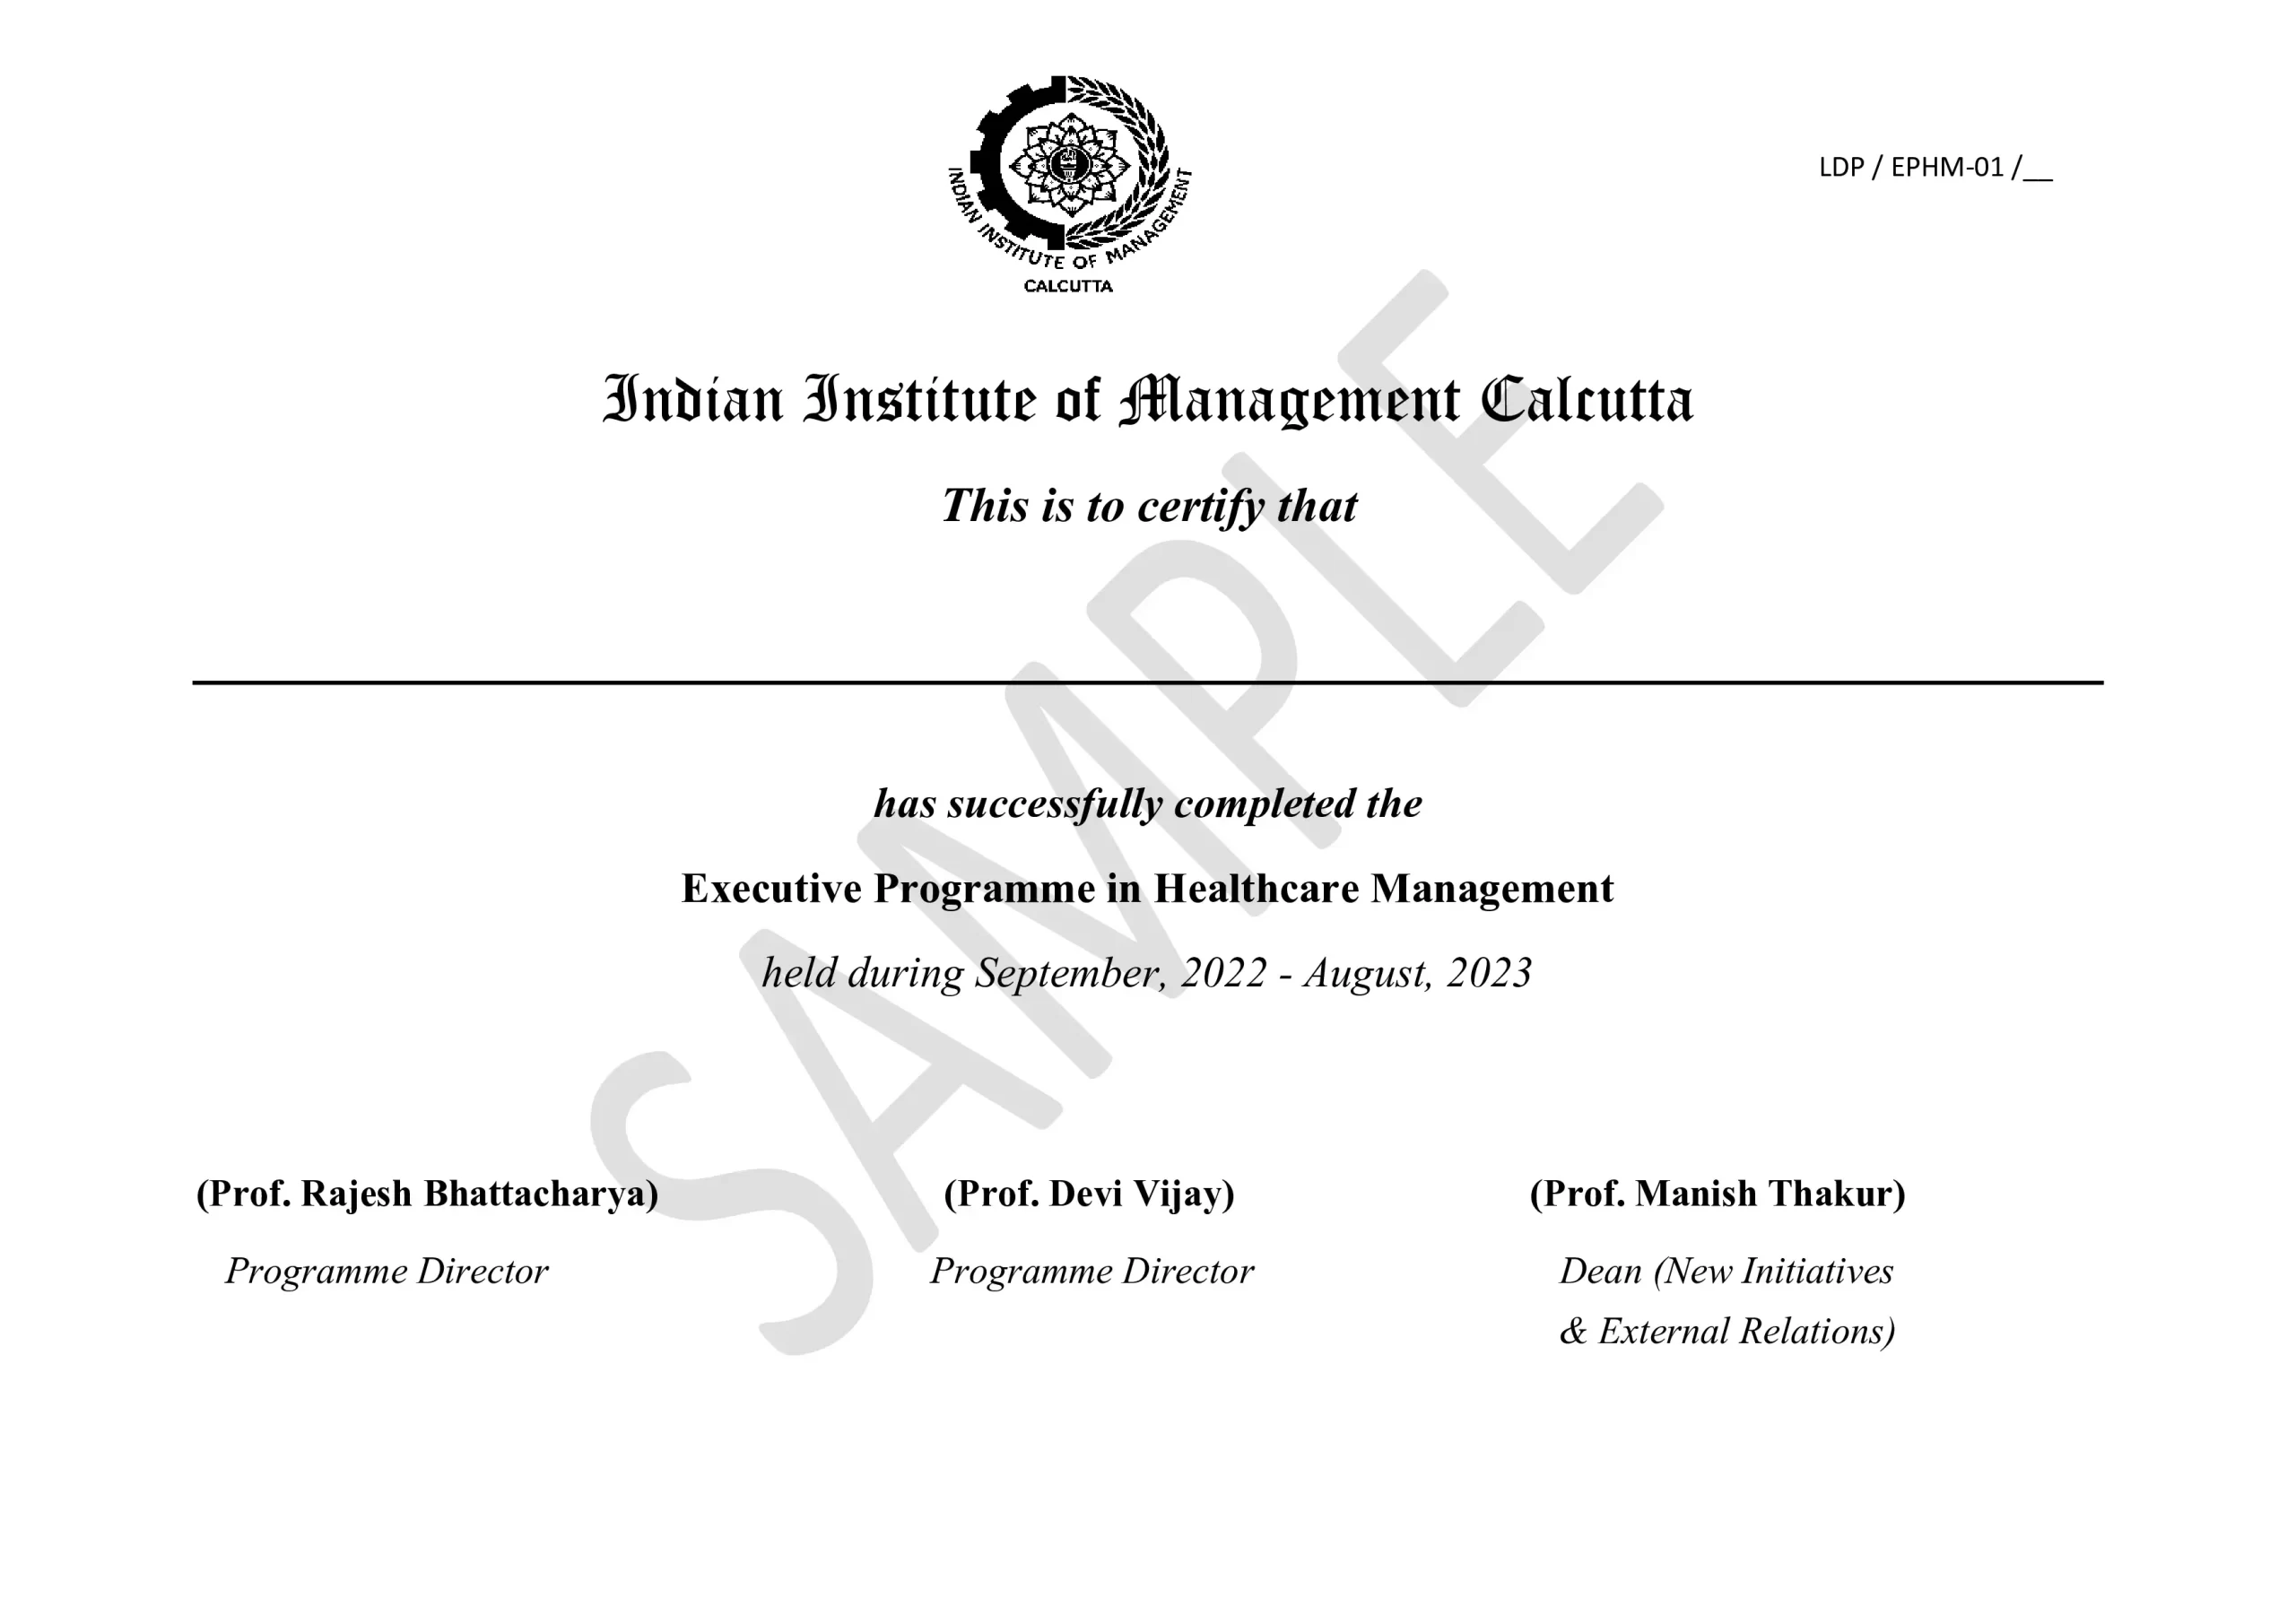 EPHM_01_Sample_certificate